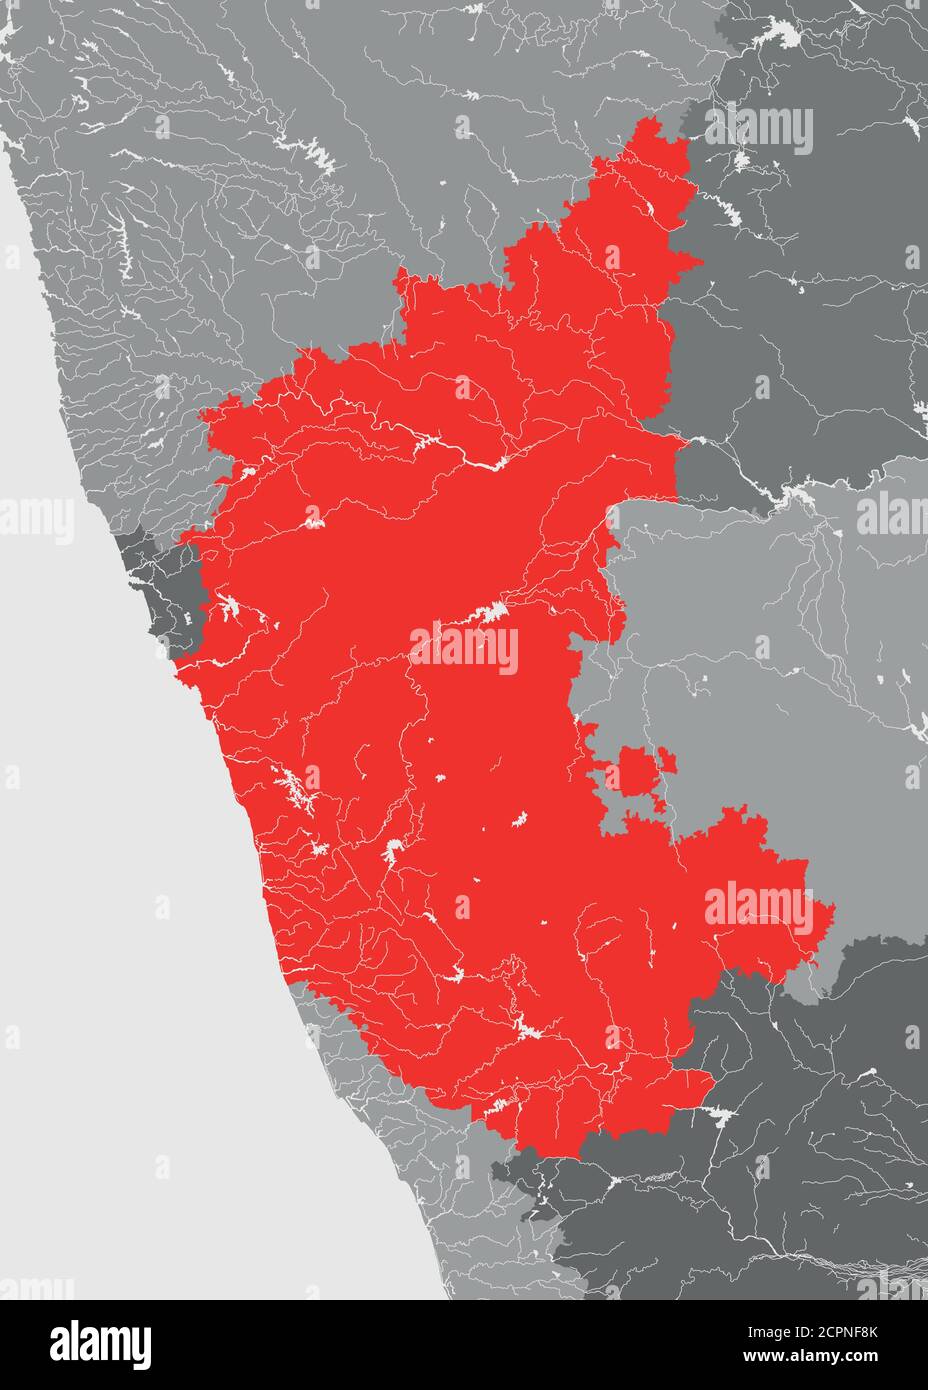 Indien Staaten - Karte von Karnataka. Handgemacht. Flüsse und Seen werden angezeigt. Bitte schauen Sie sich meine anderen Bilder von kartographischen Serien an - sie sind alle sehr deta Stock Vektor